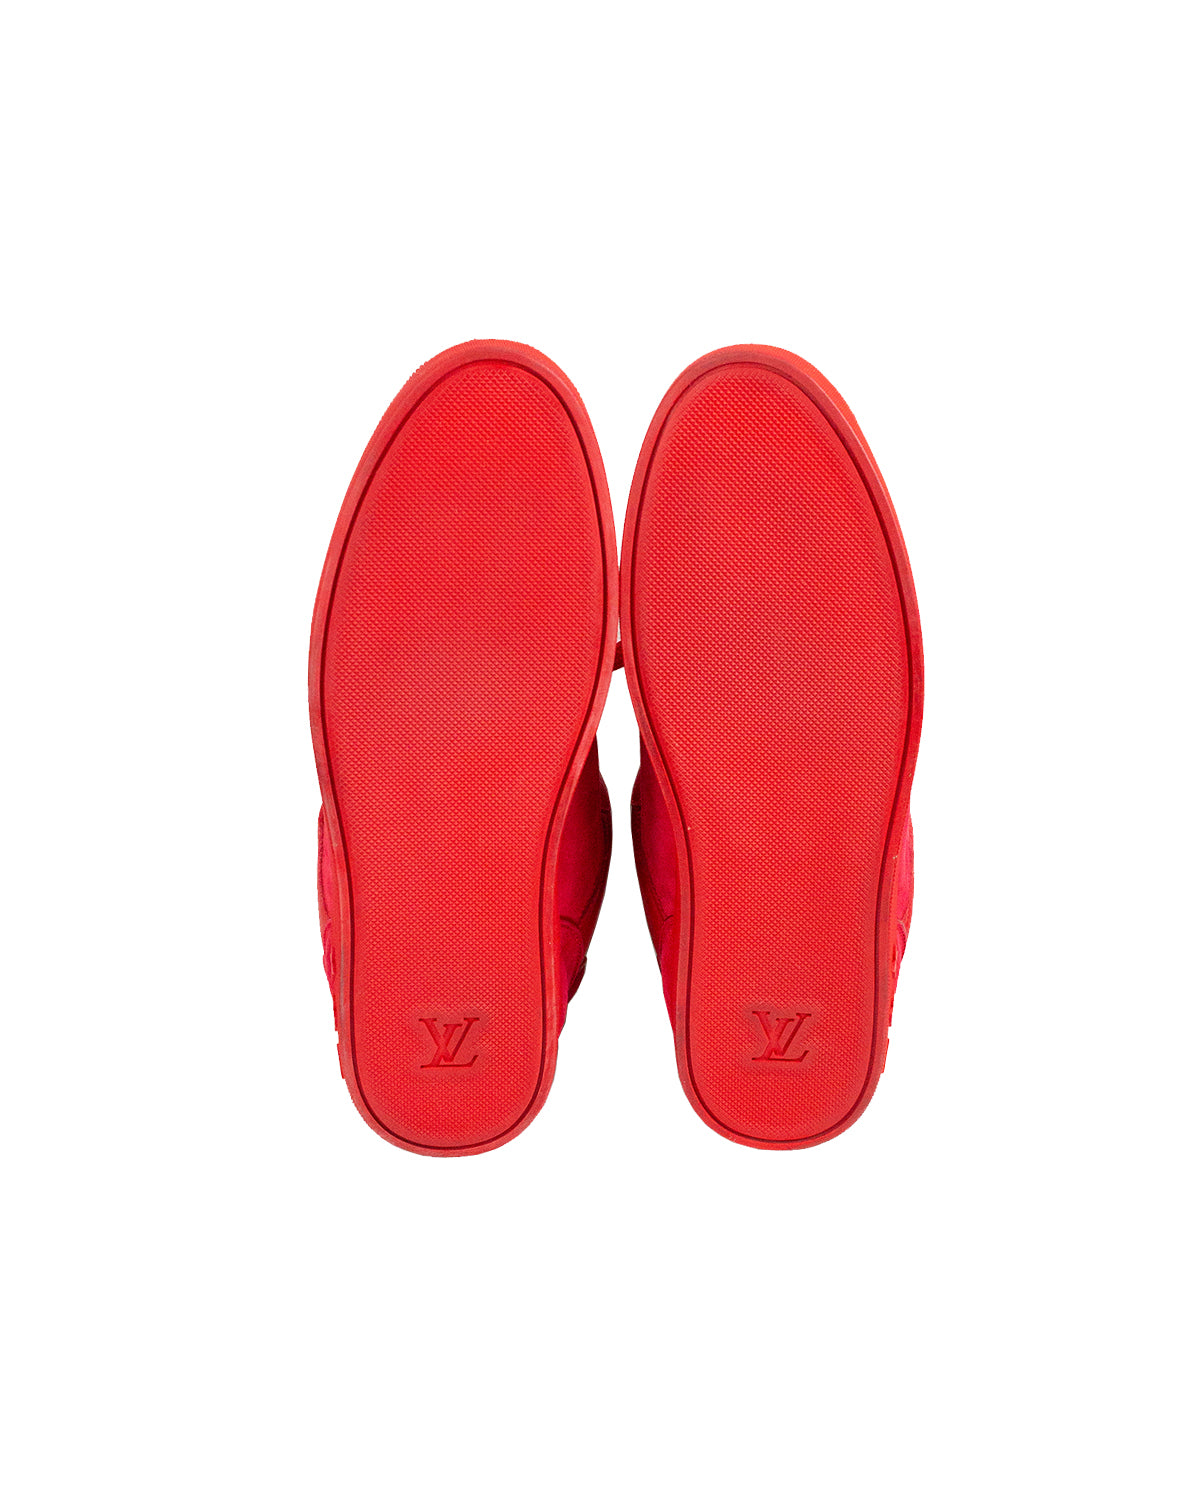 Louis Vuitton, Shoes, Louis Vuitton Red Bottoms Size 9